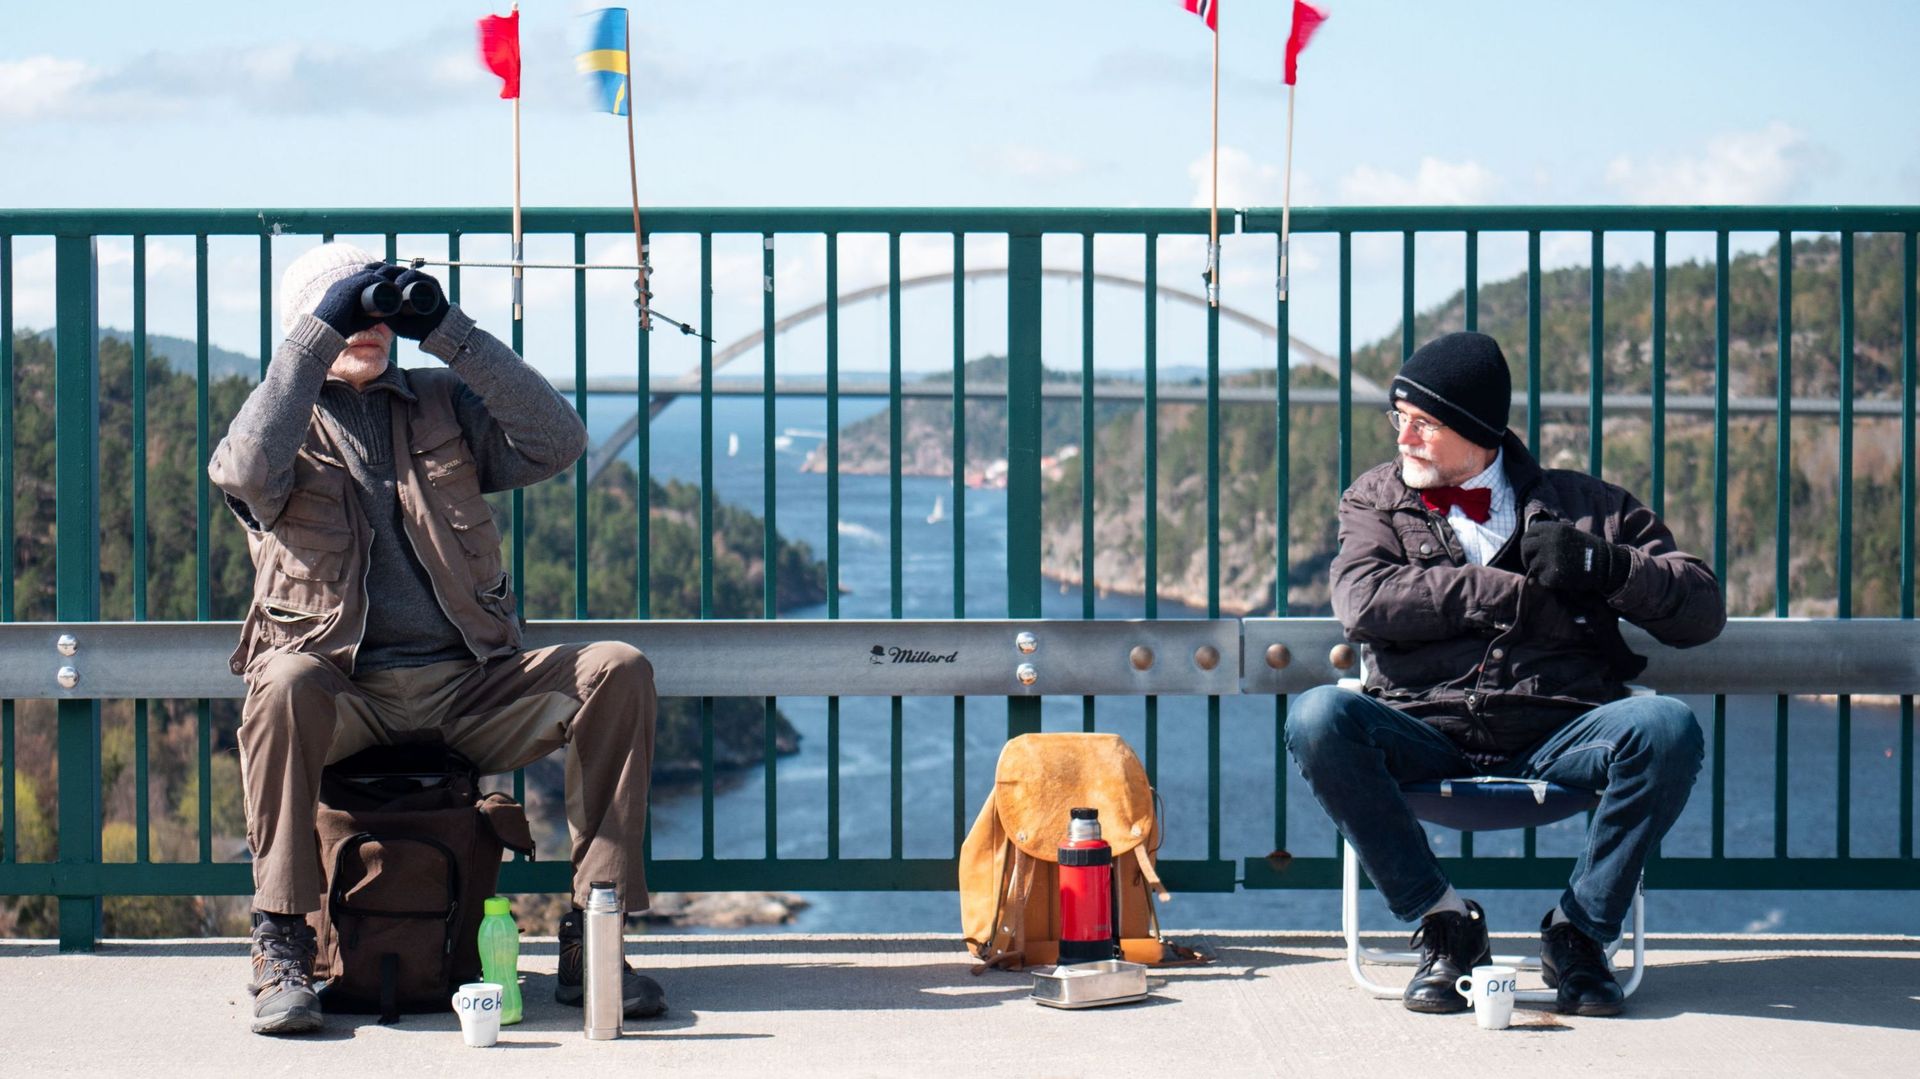 Deux jumeaux se retrouvent quotidiennement de l’autre côté de la frontière entre la Suède et la Norvège